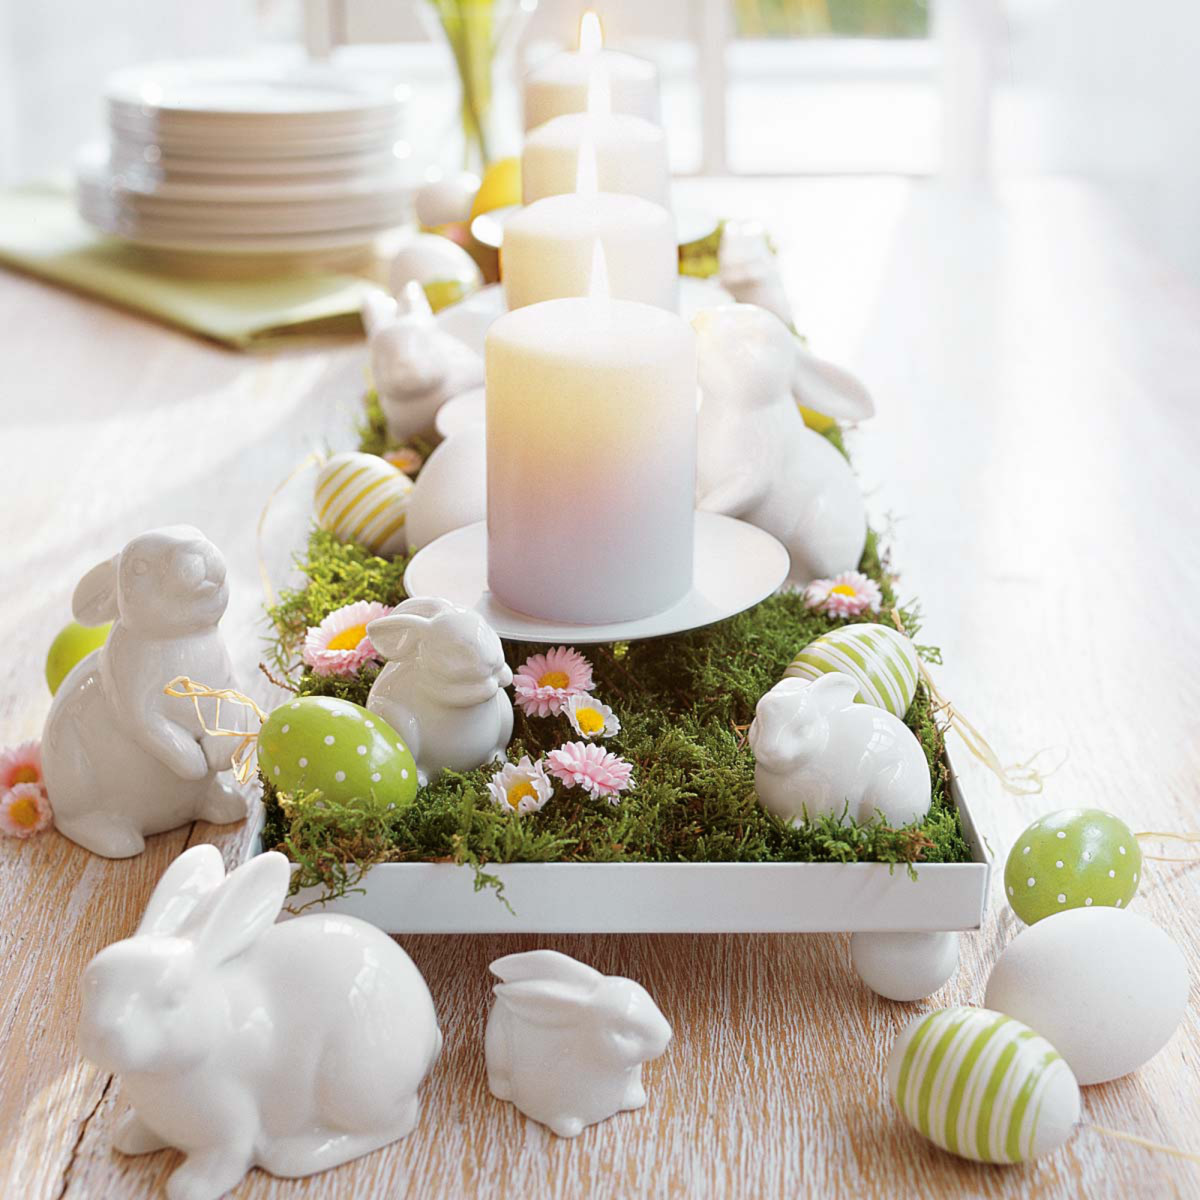 bestellen kanaal Riet Tafel versieren voor Pasen - So Celebrate! - vier de seizoenen